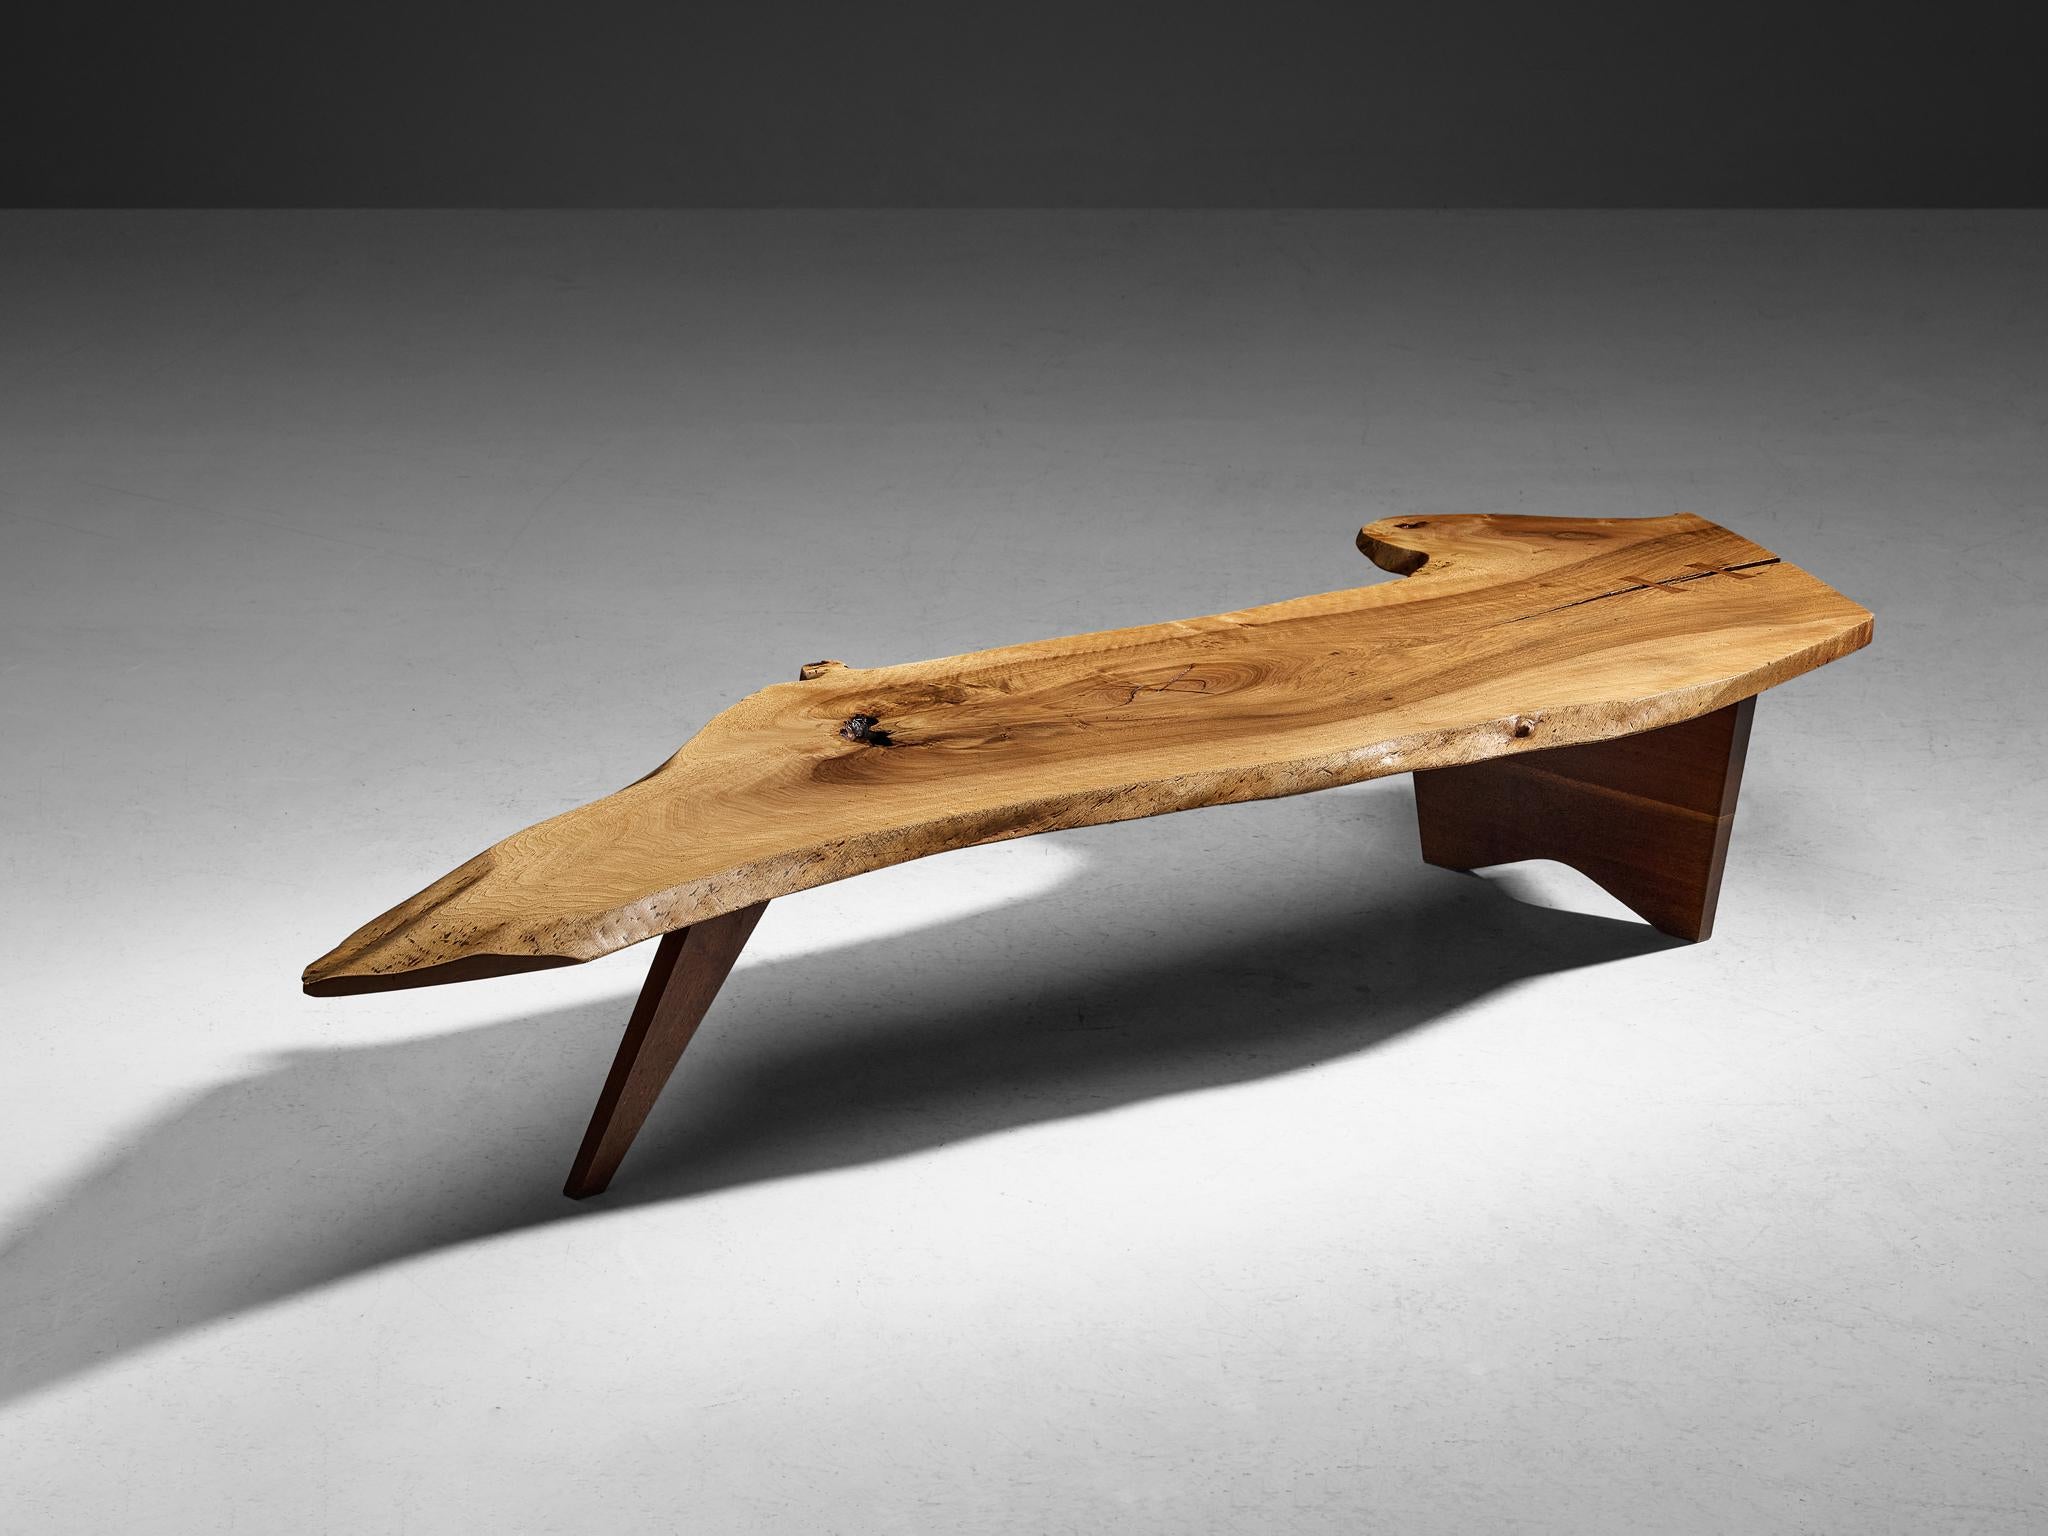 George Nakashima, table basse à bord libre, noyer, États-Unis, 1958

L'ébéniste et designer américain George Nakashima prouve avec cette table quintessentielle qu'il est un véritable maître de son art. L'impressionnante table basse, créée sur mesure